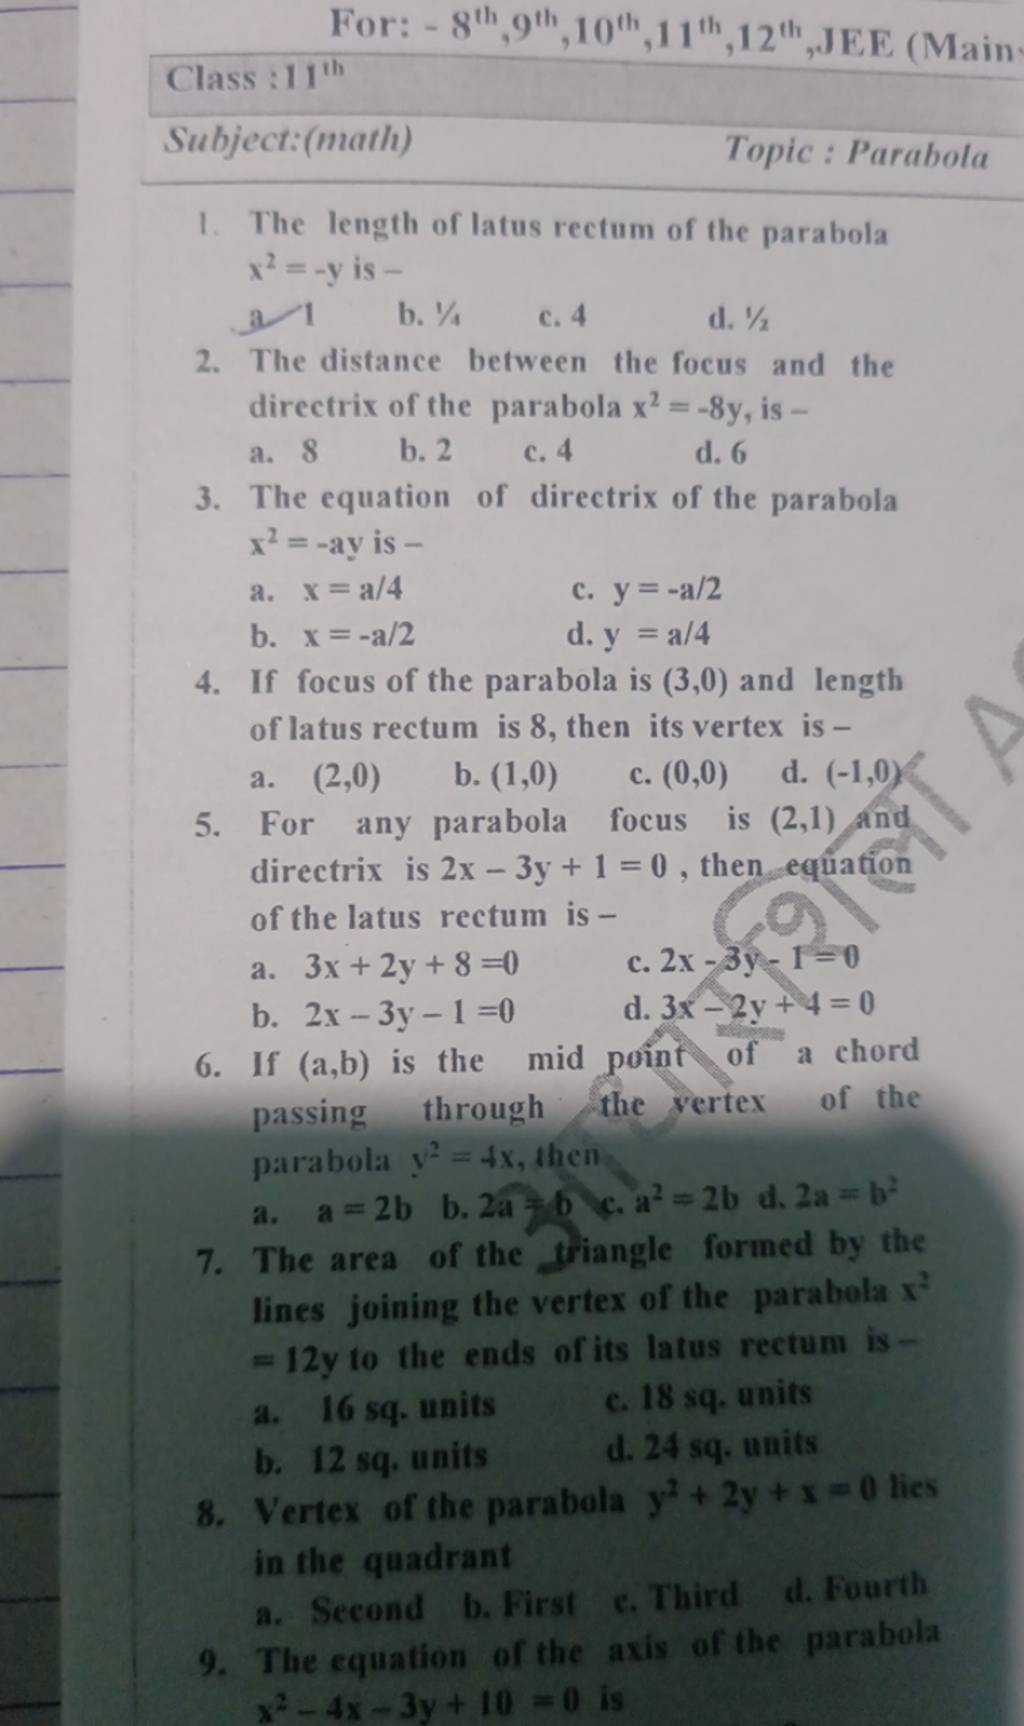 Vertex of the parabola y2+2y+x=0 lies in the quadrant